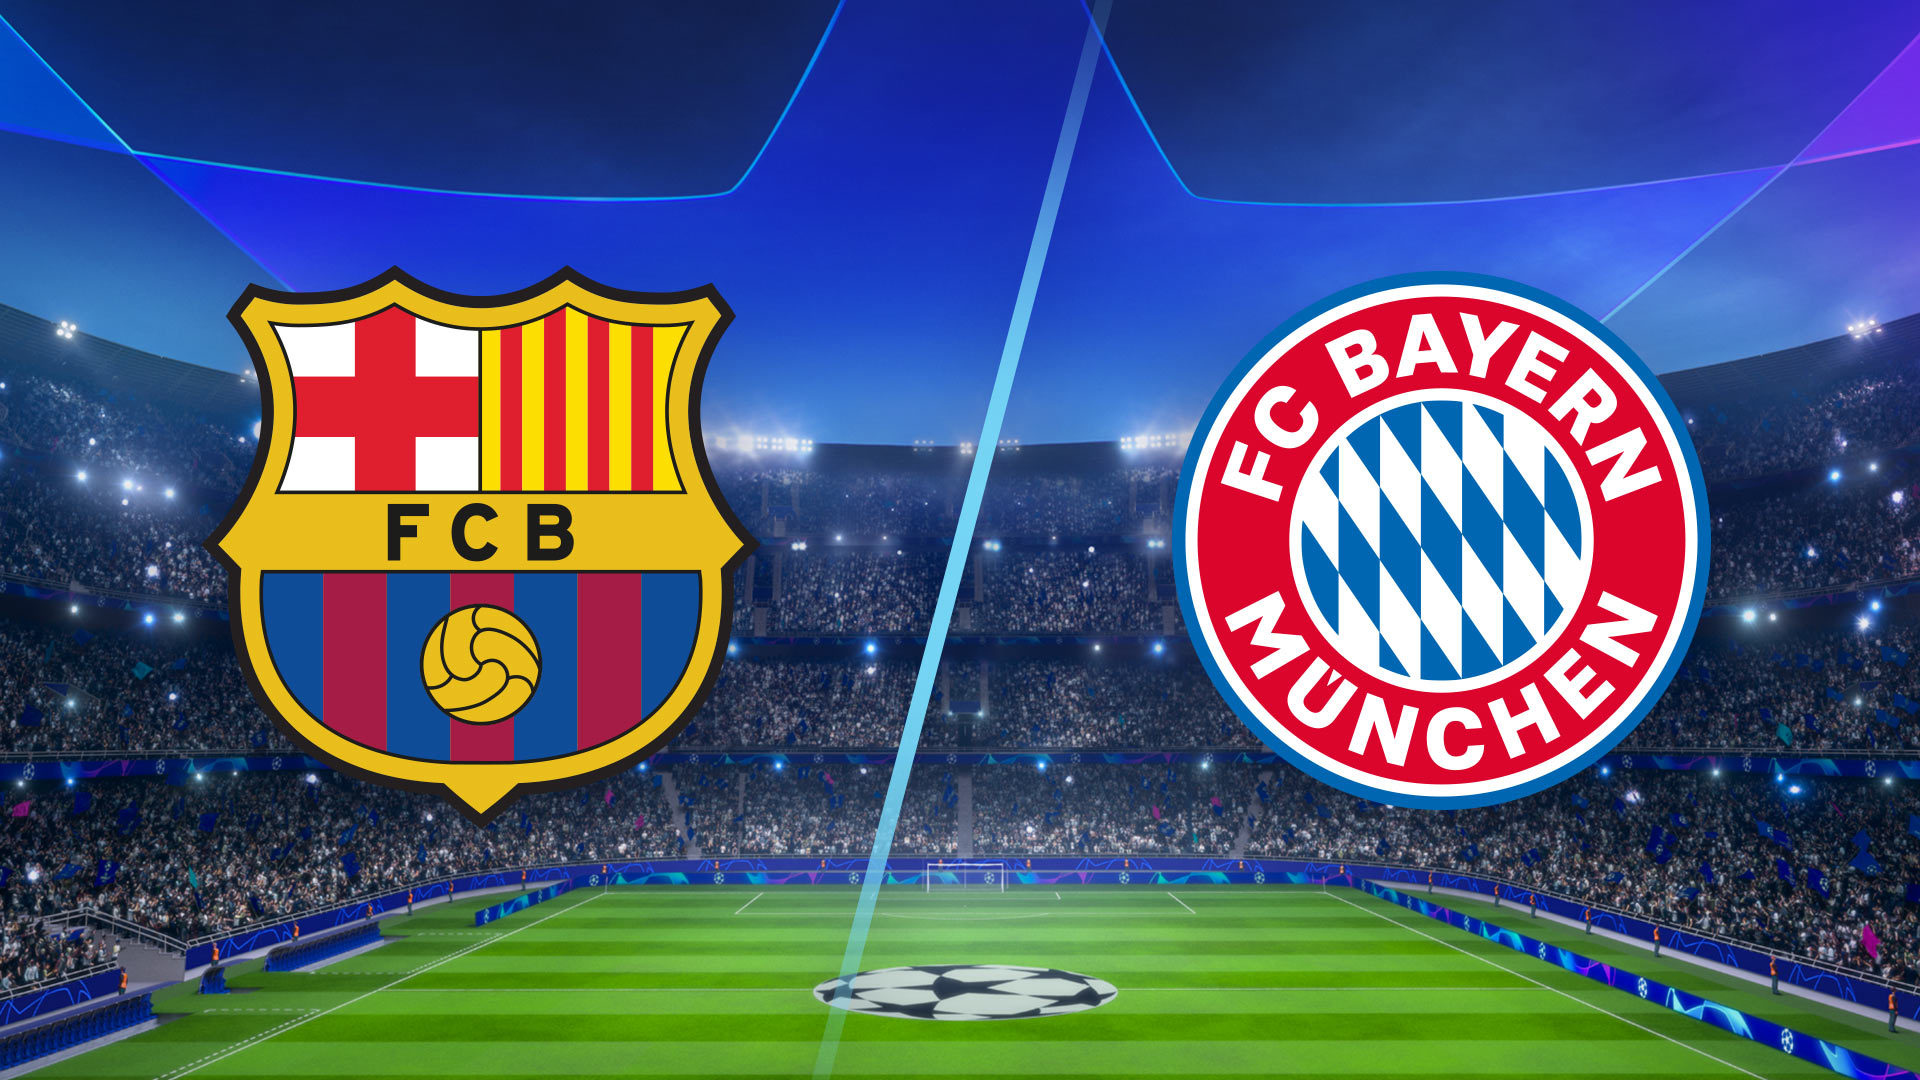 Watch UEFA Champions League Season 2020 Episode 7 Barcelona vs